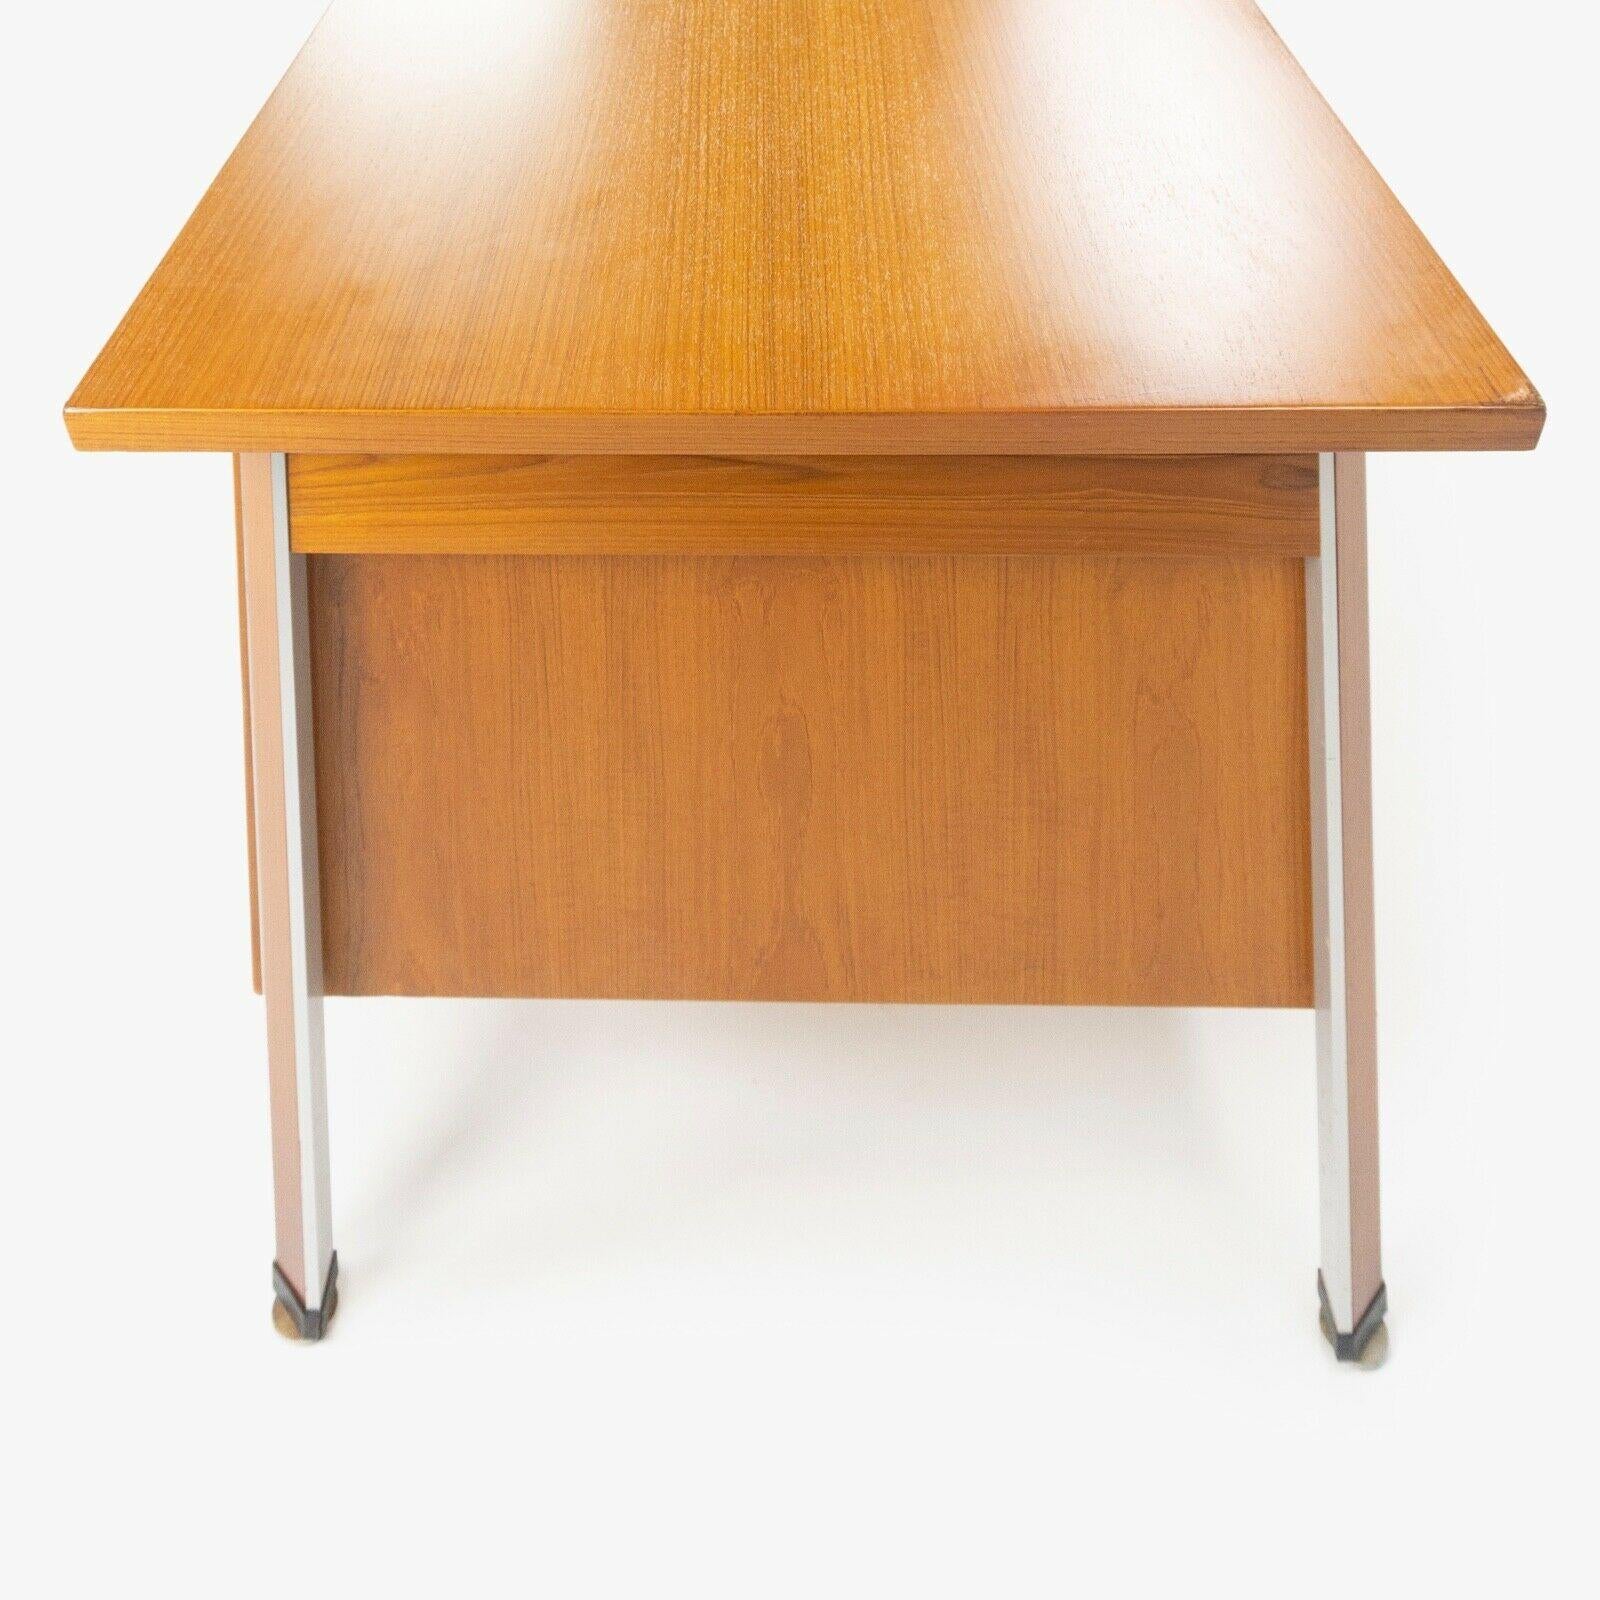 Mid-20th Century 1960s Finn Juhl France & Son Technocrat Desk Model 963 in Teak Made in Denmark For Sale